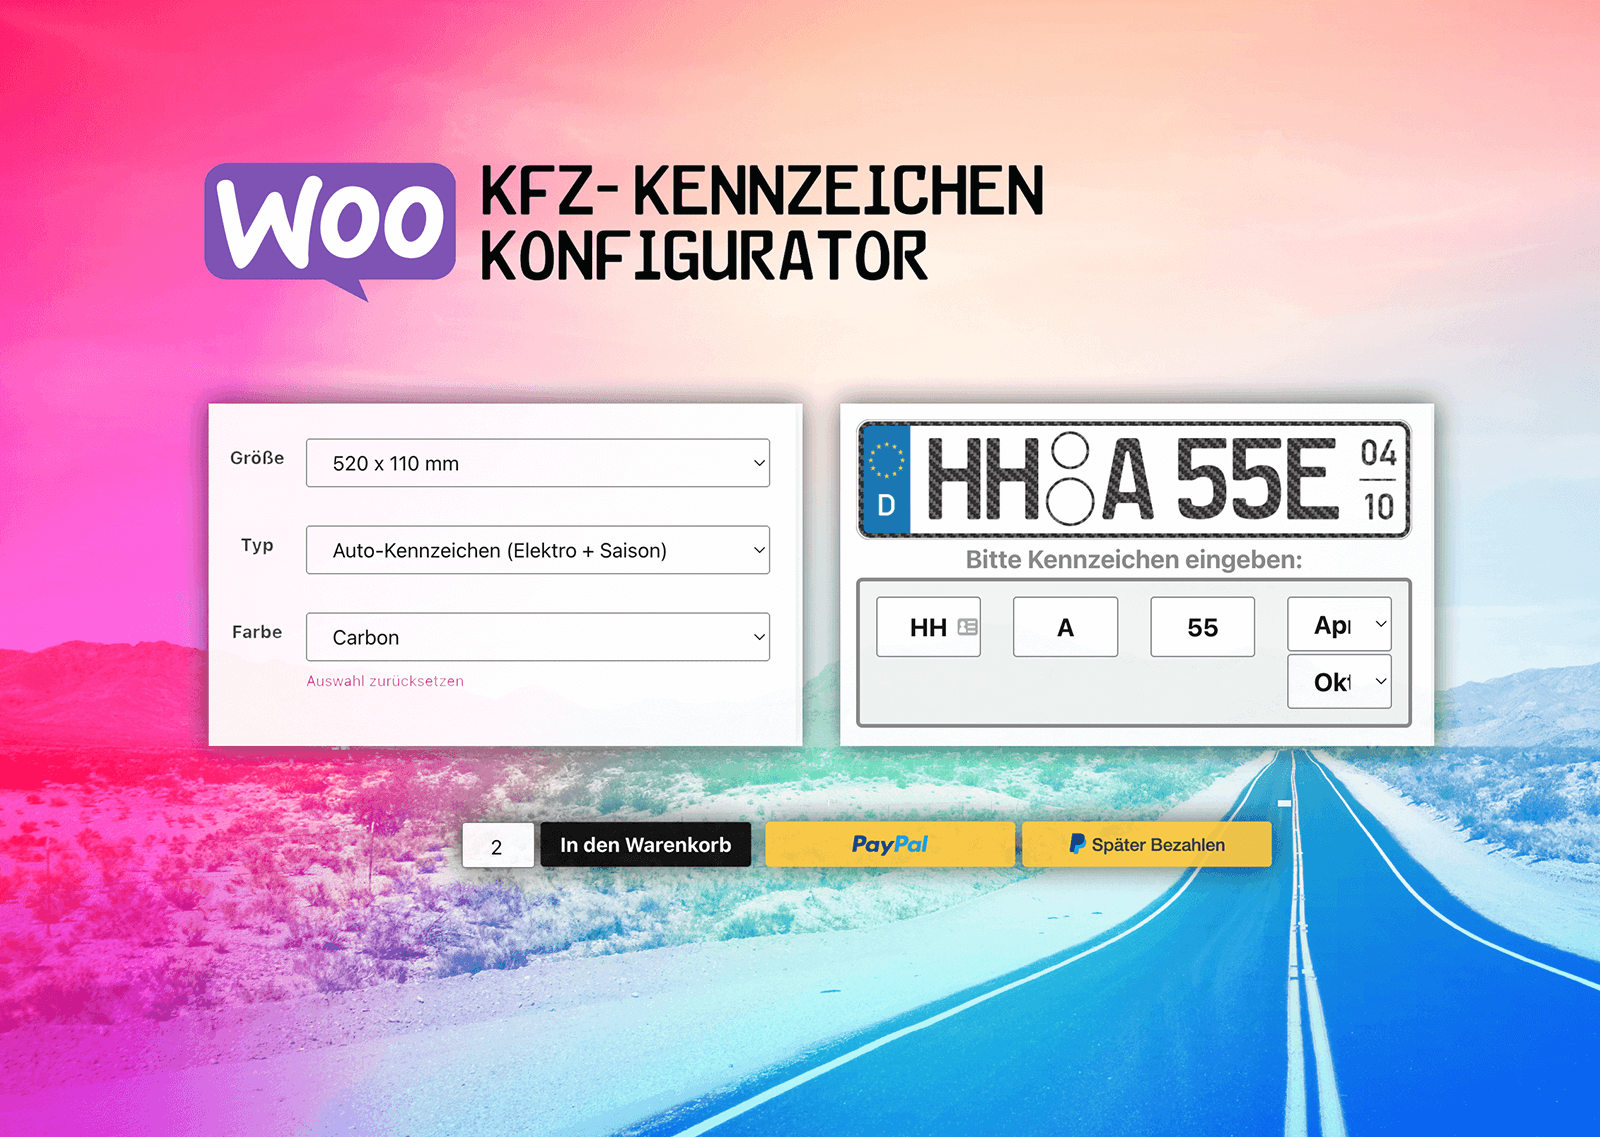 Woocommerce KFZ-Kennzeichen-Konfigurator 2023